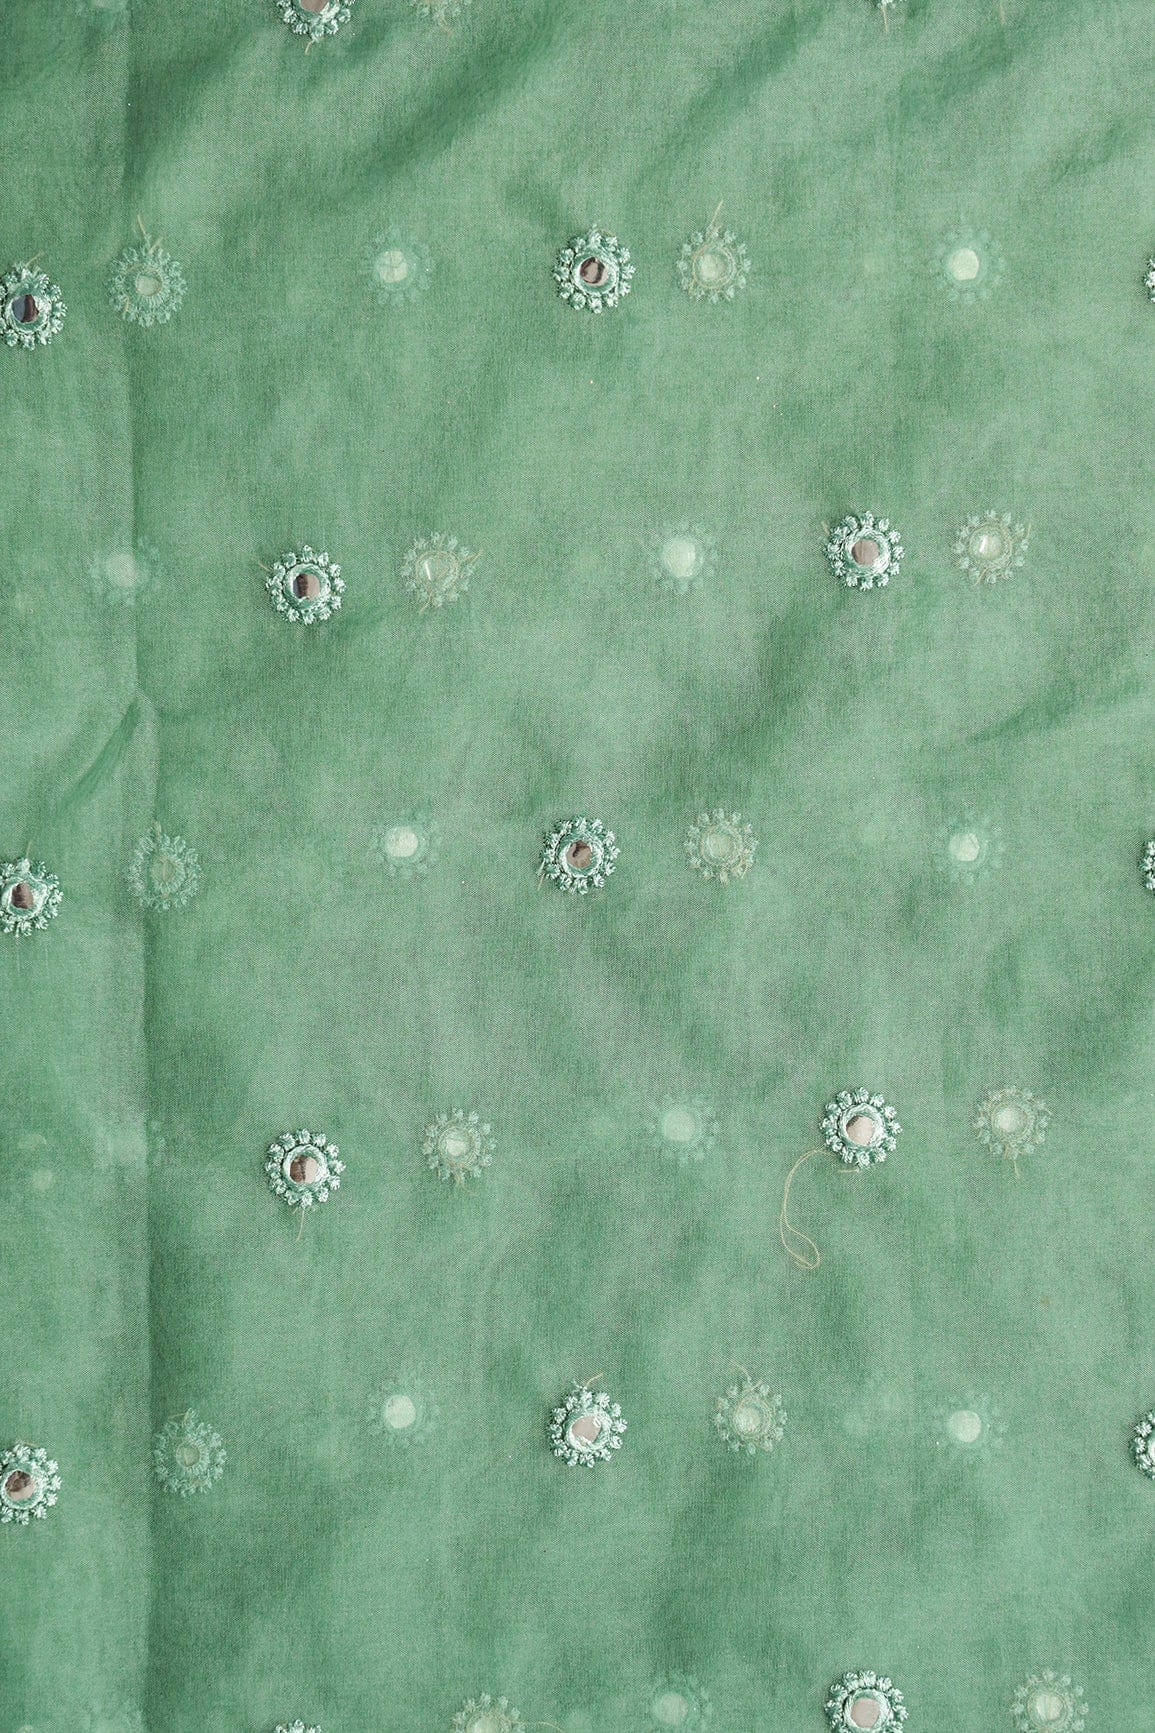 doeraa LEHENGA SET White And Olive Unstitched Lehenga Set Fabric (3 Piece)